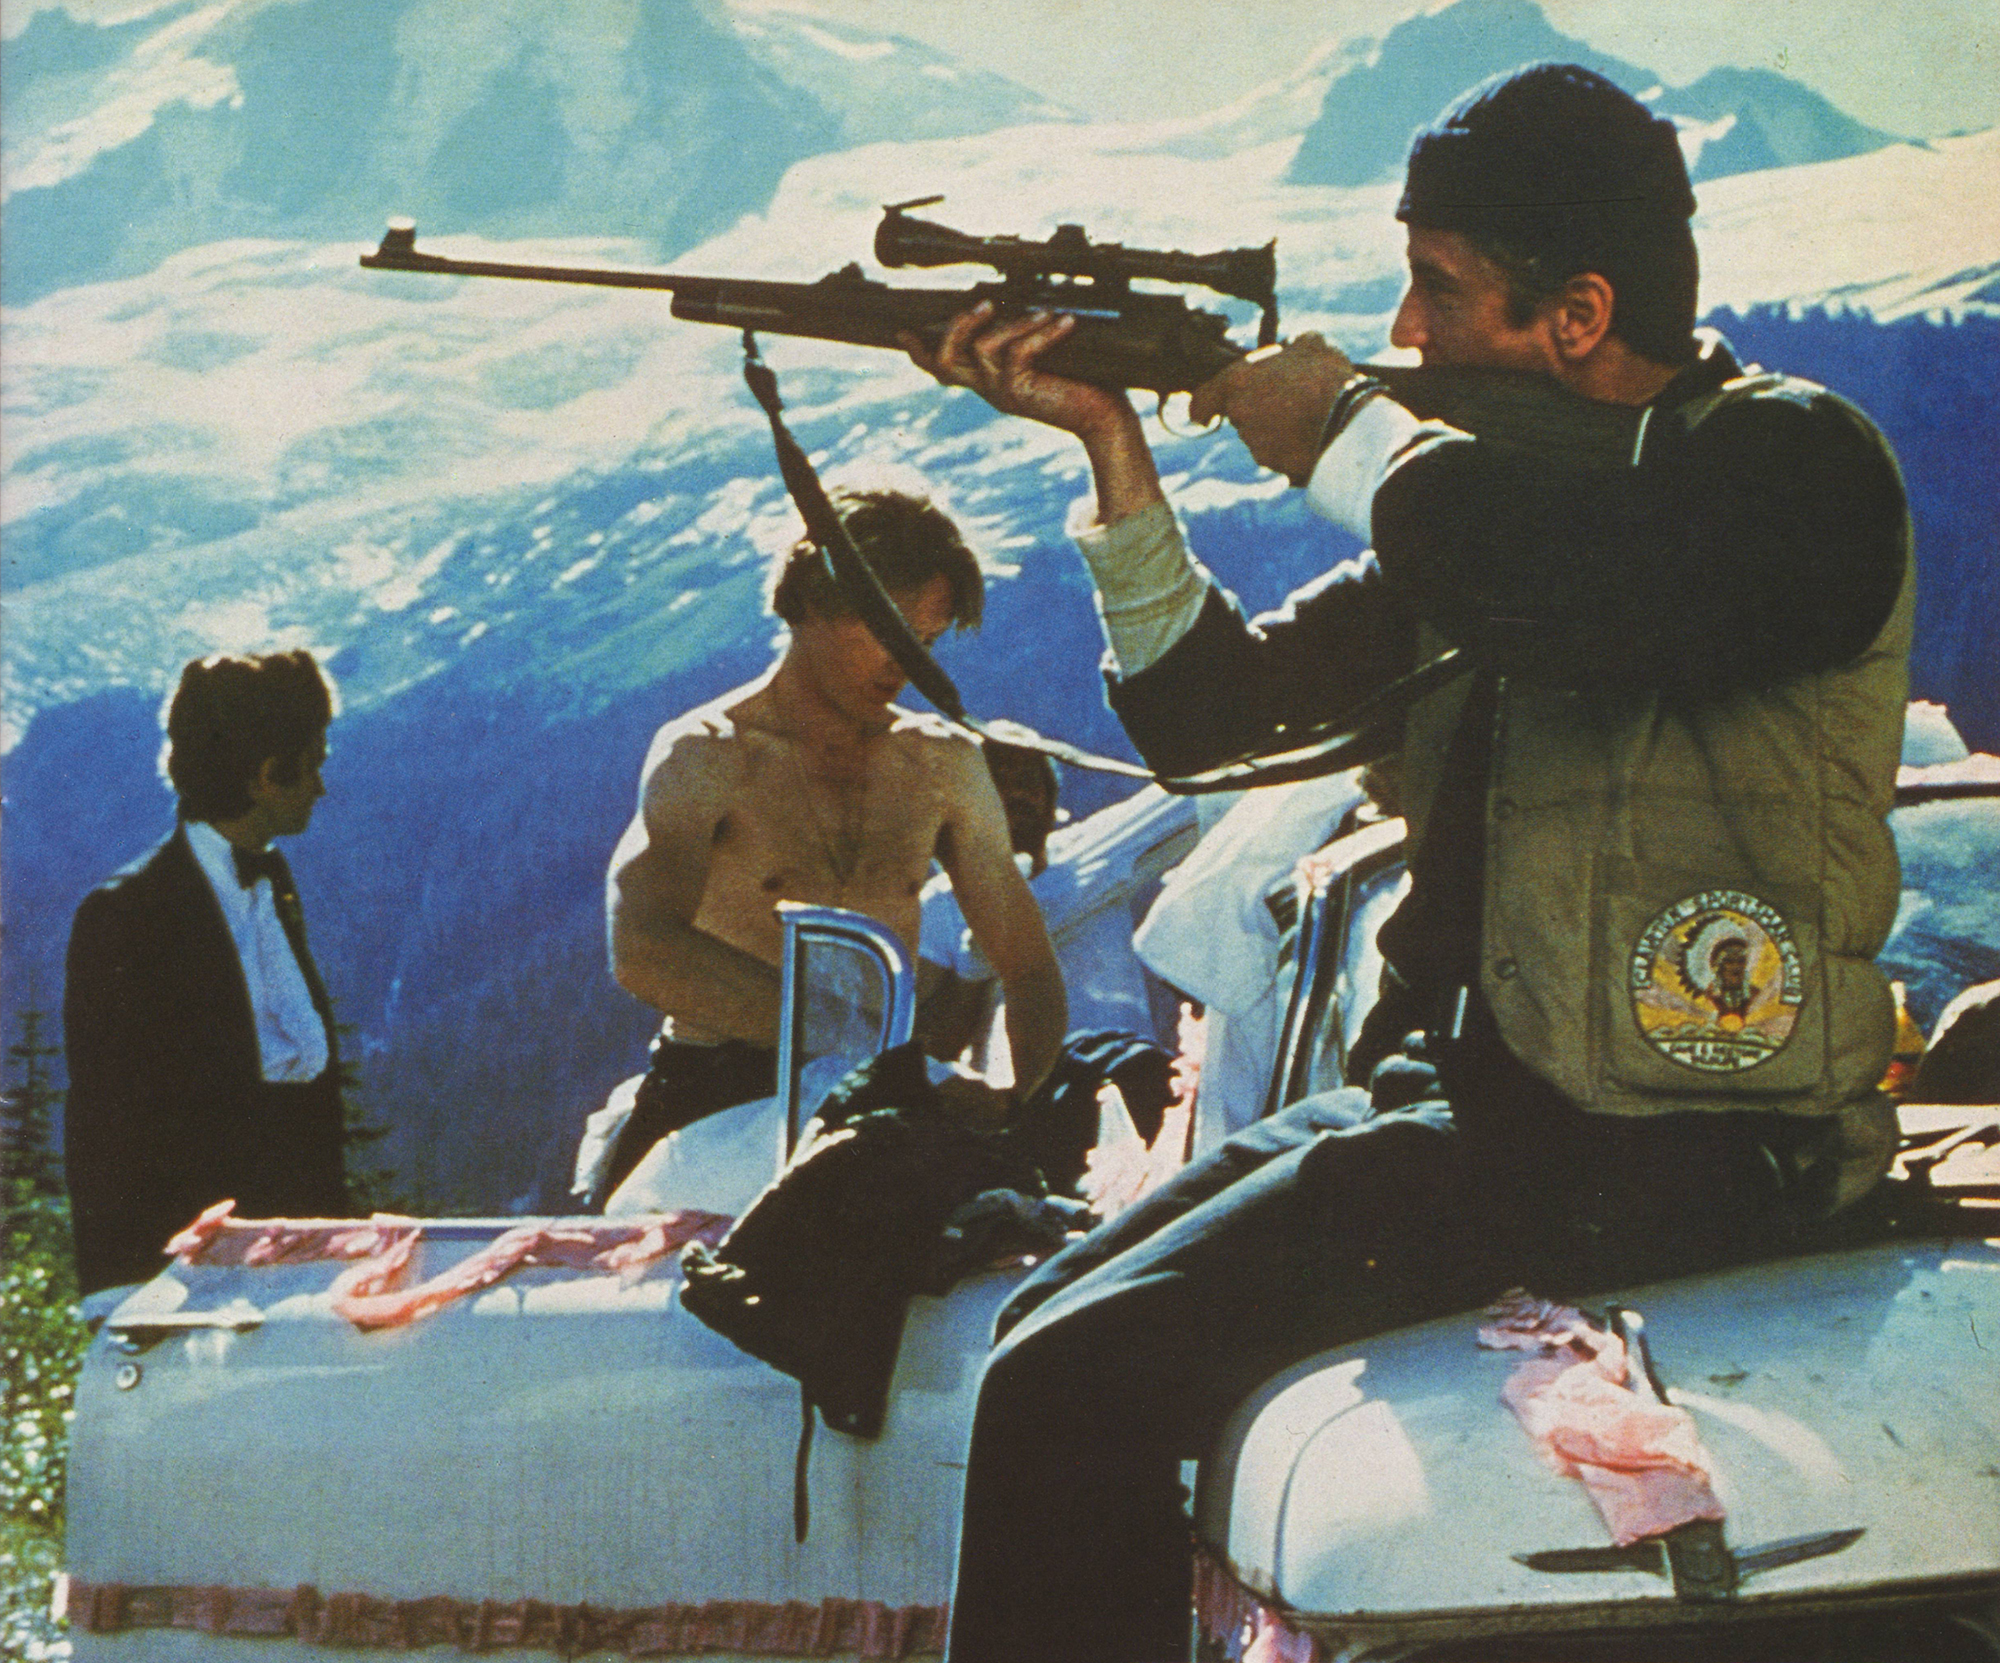 The Deer Hunter (1978) Rober De Niro with Christopher Walken and John Cazale